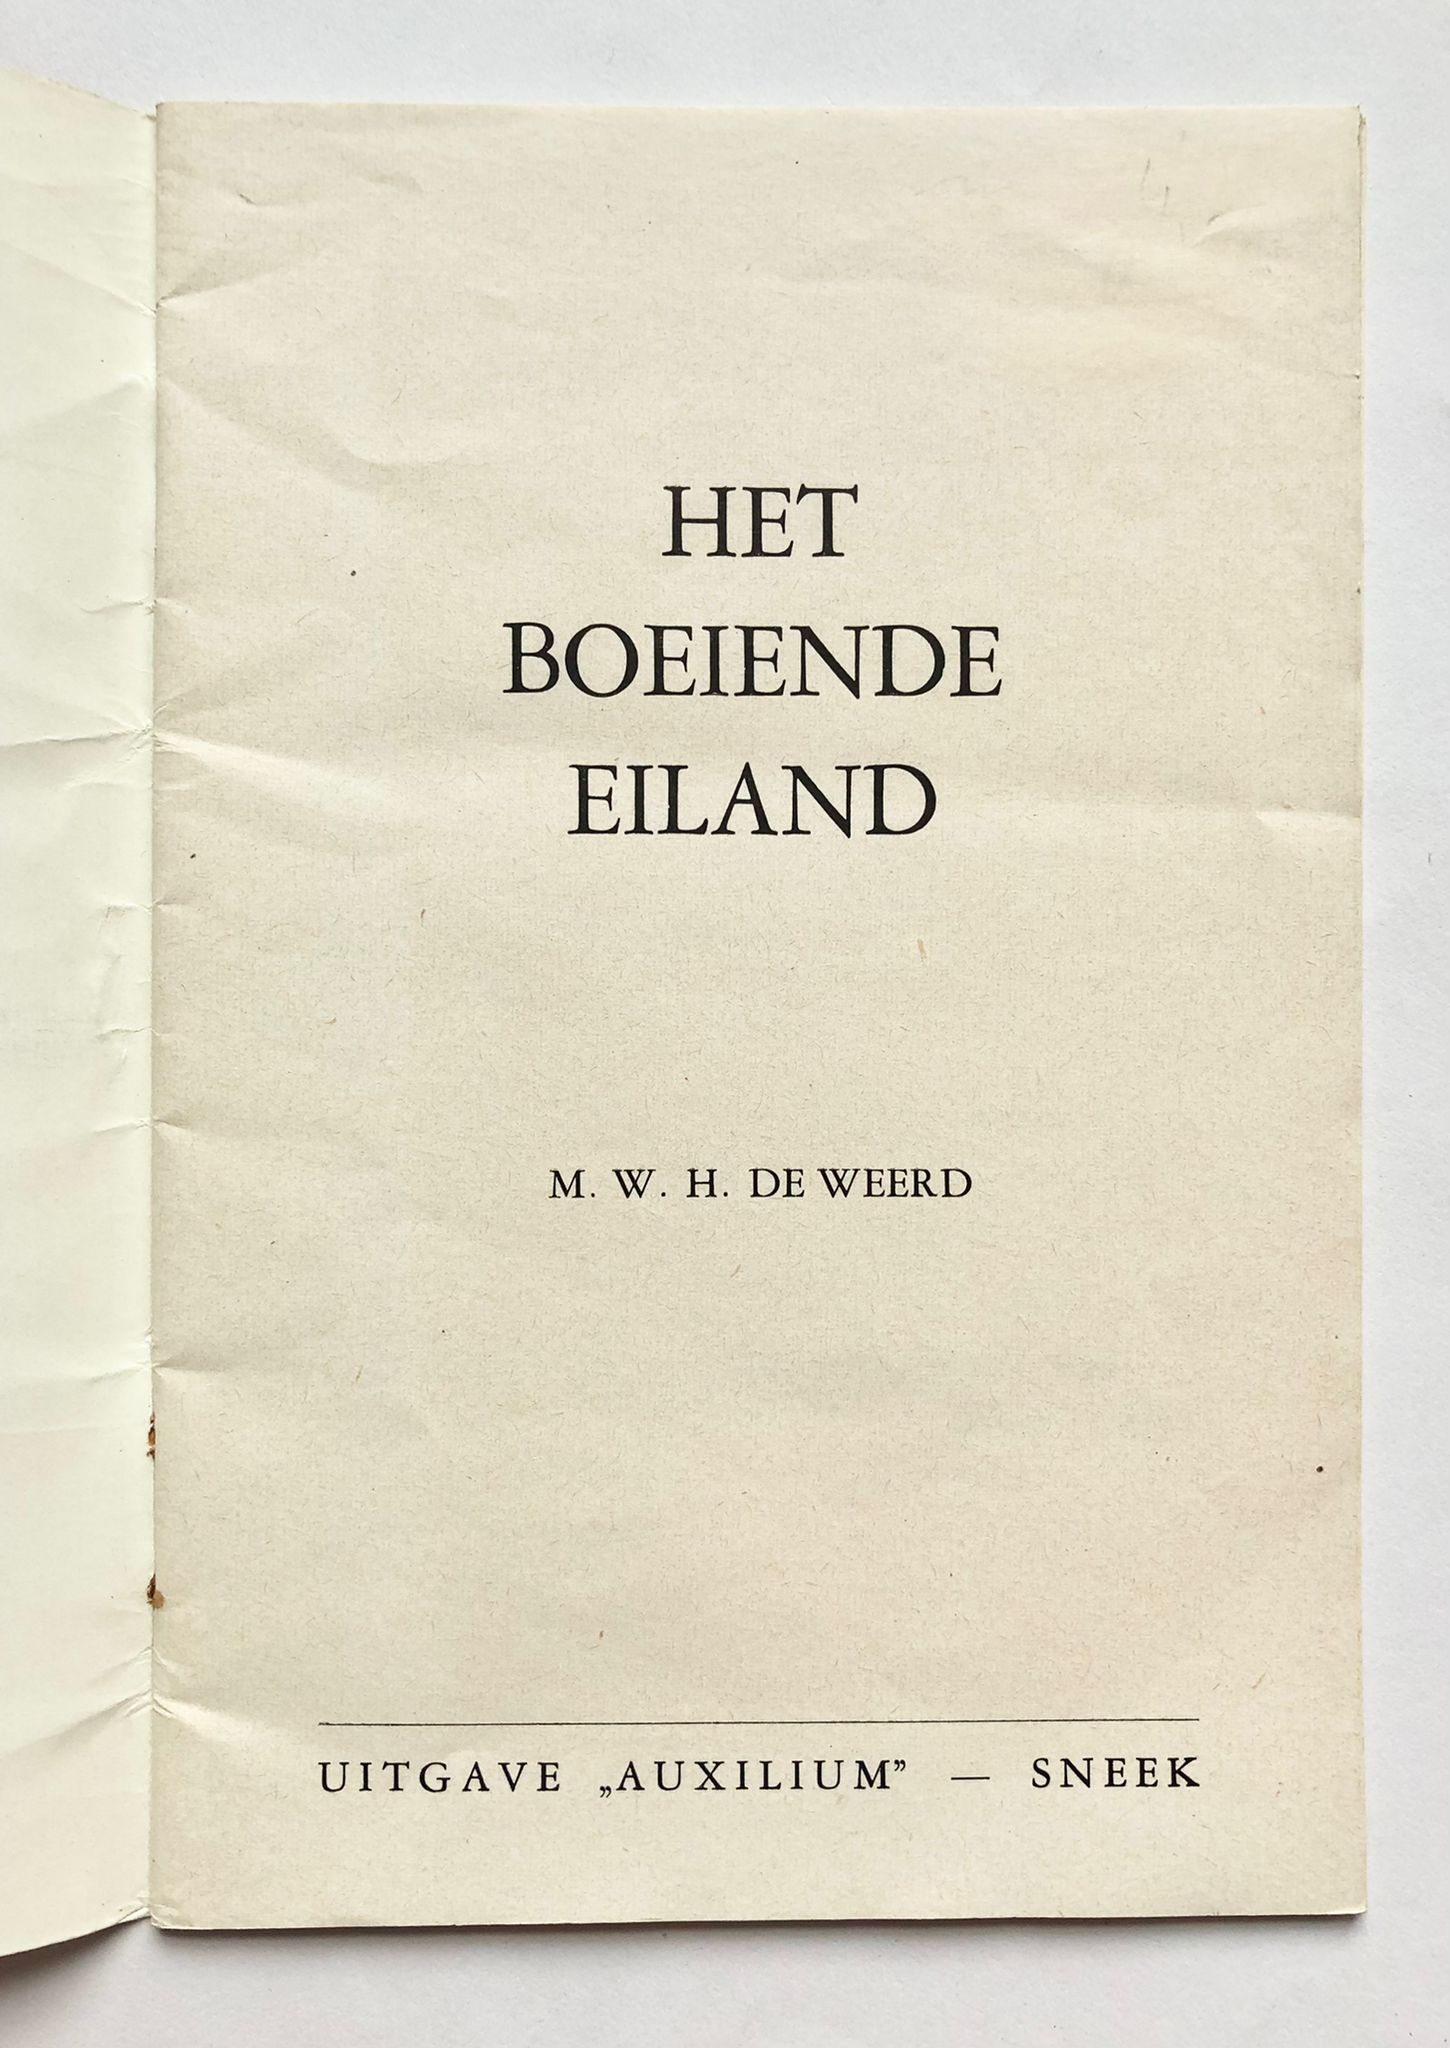 [Schiermonnikoog] Het boeiende Eiland, een dichterlijke illustratie-reportage van Schiermonnikoog met de mooiste foto’s van het eiland, Uitgave ,,Auxilium”, Sneek, 33 pp.